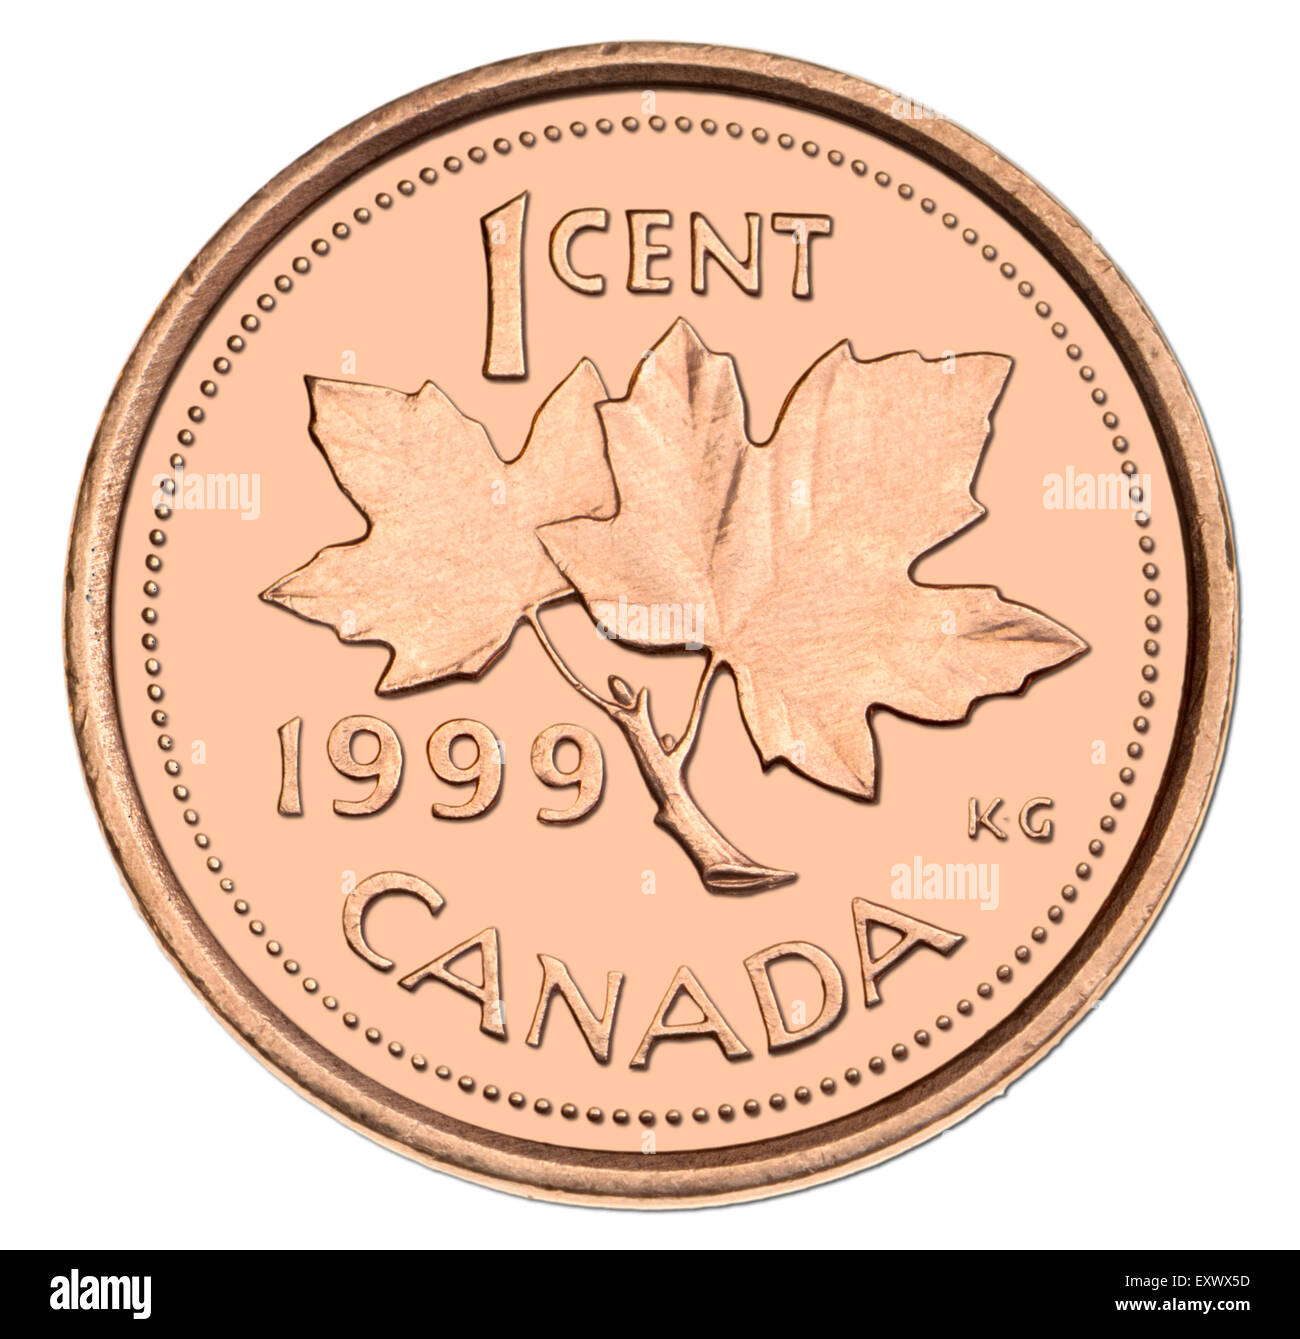 Kanadische 1c Münze von 1999 zeigt Ahorn Blätter (Hintergrund Digital geändert) Stockfoto